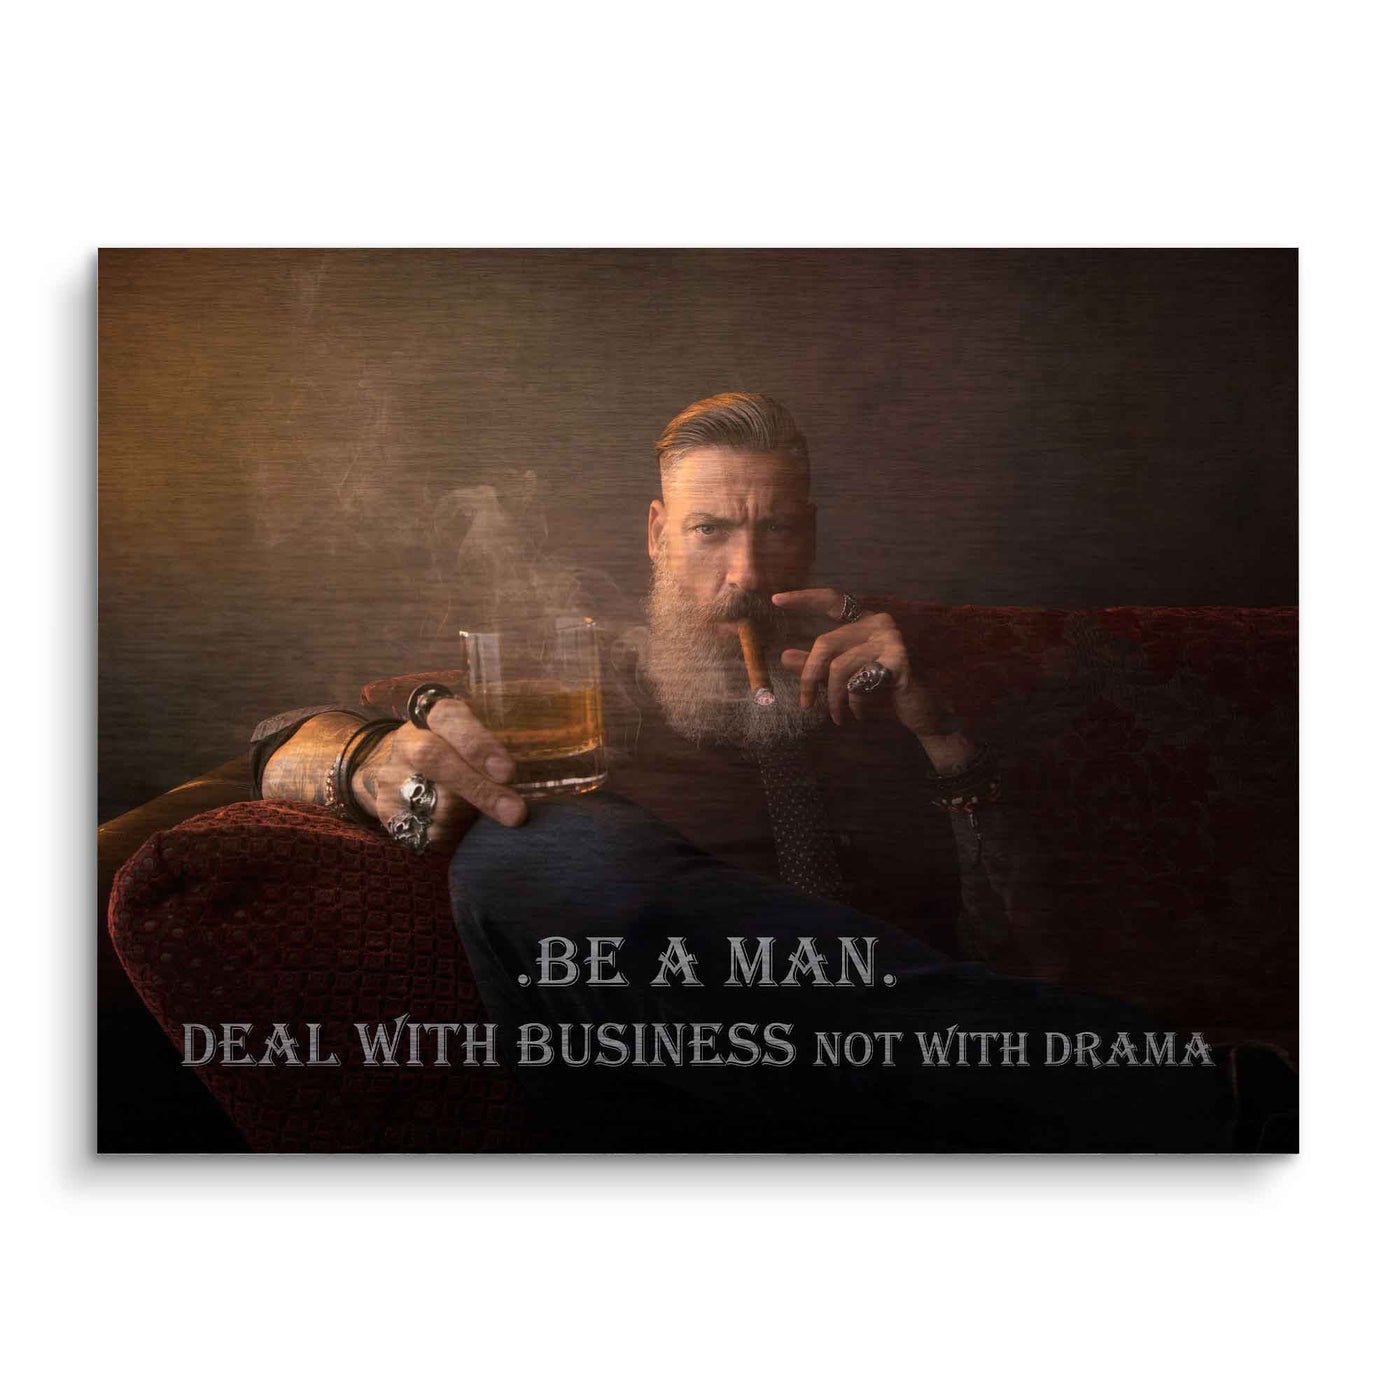 Be a man